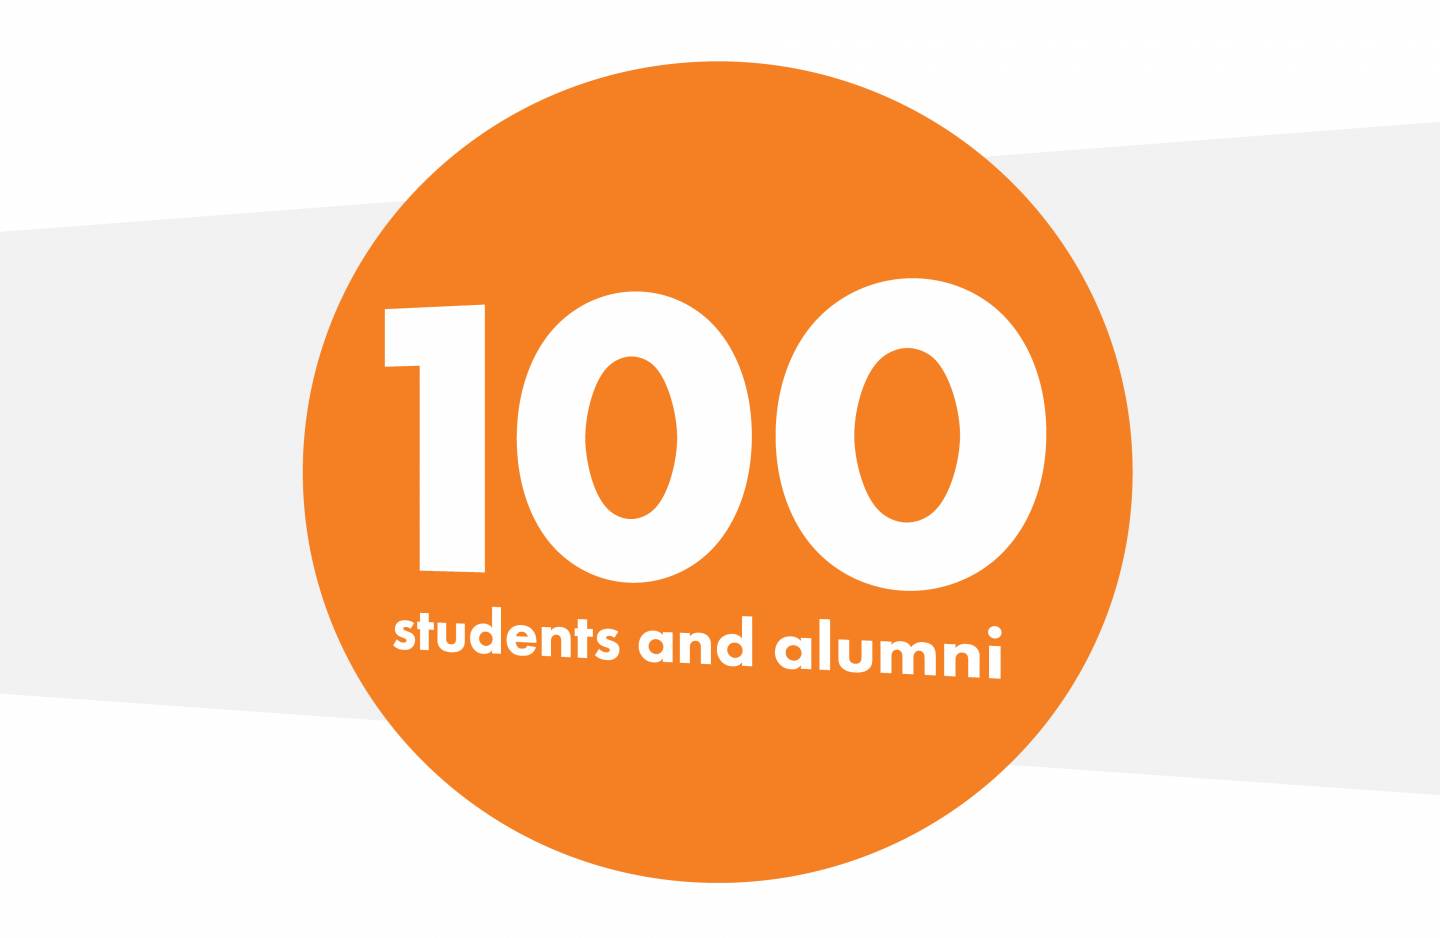 Orange circle says "100 students and alumni"